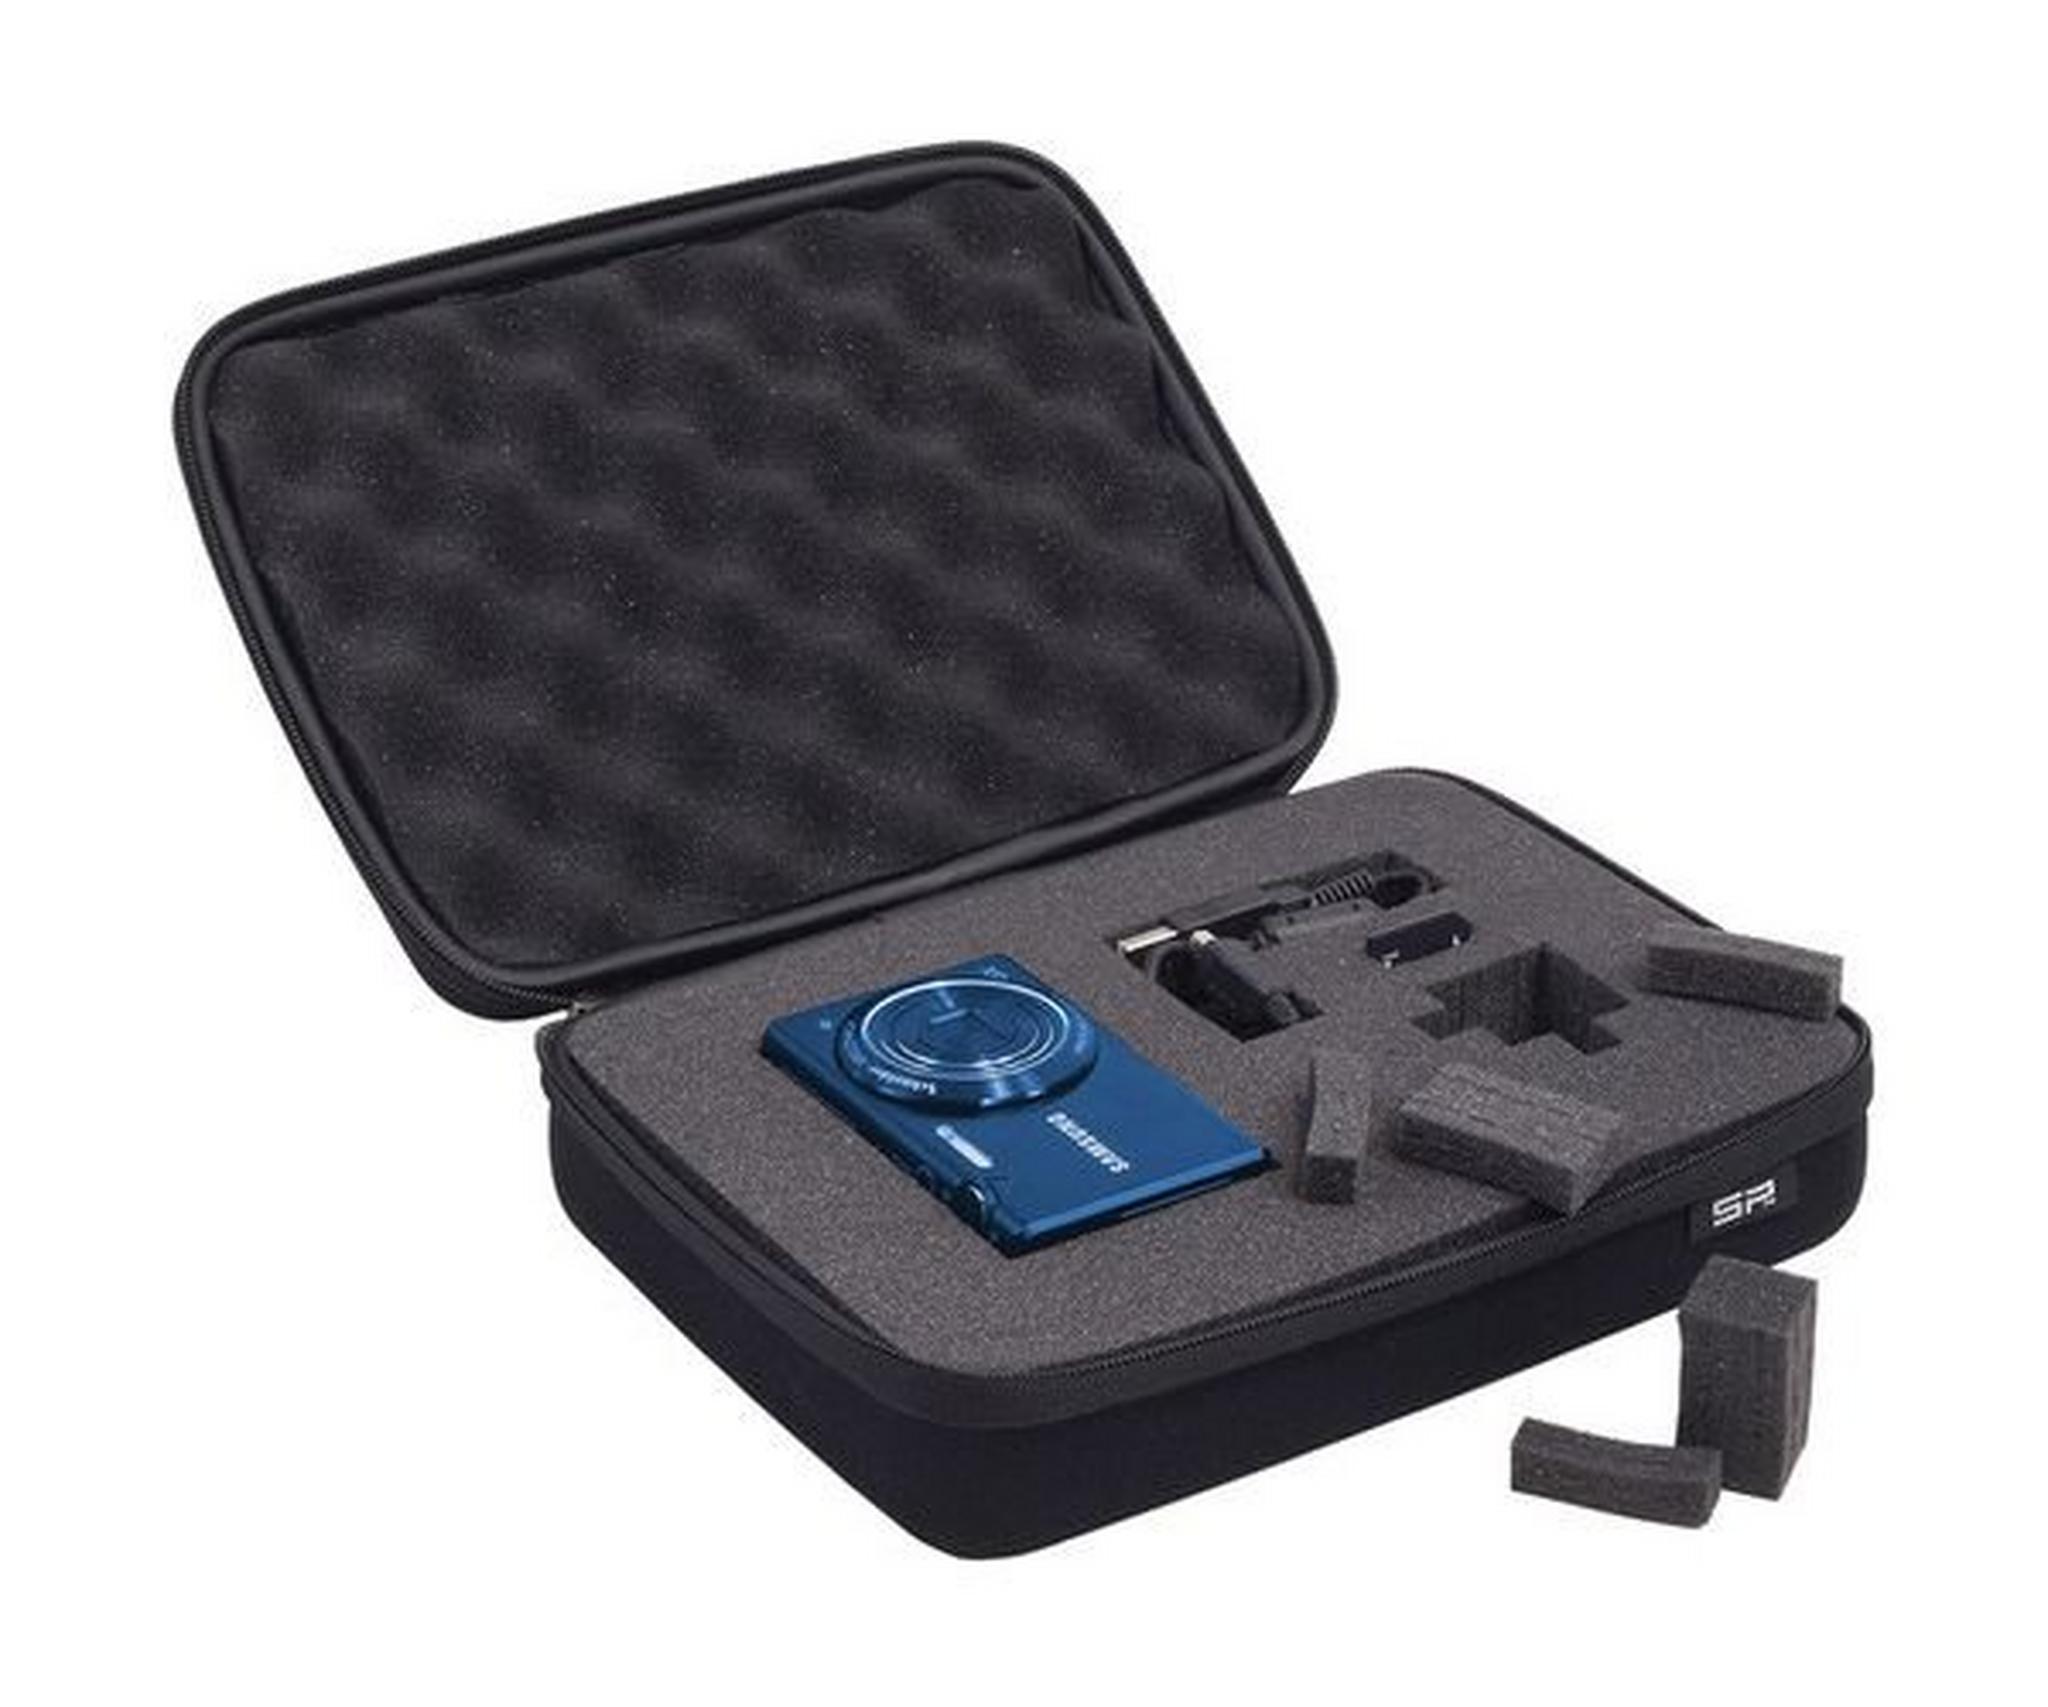 حقيبة الحماية الكامير ماي كايس من إس بي يونايتد - صغير - أسود (52020)